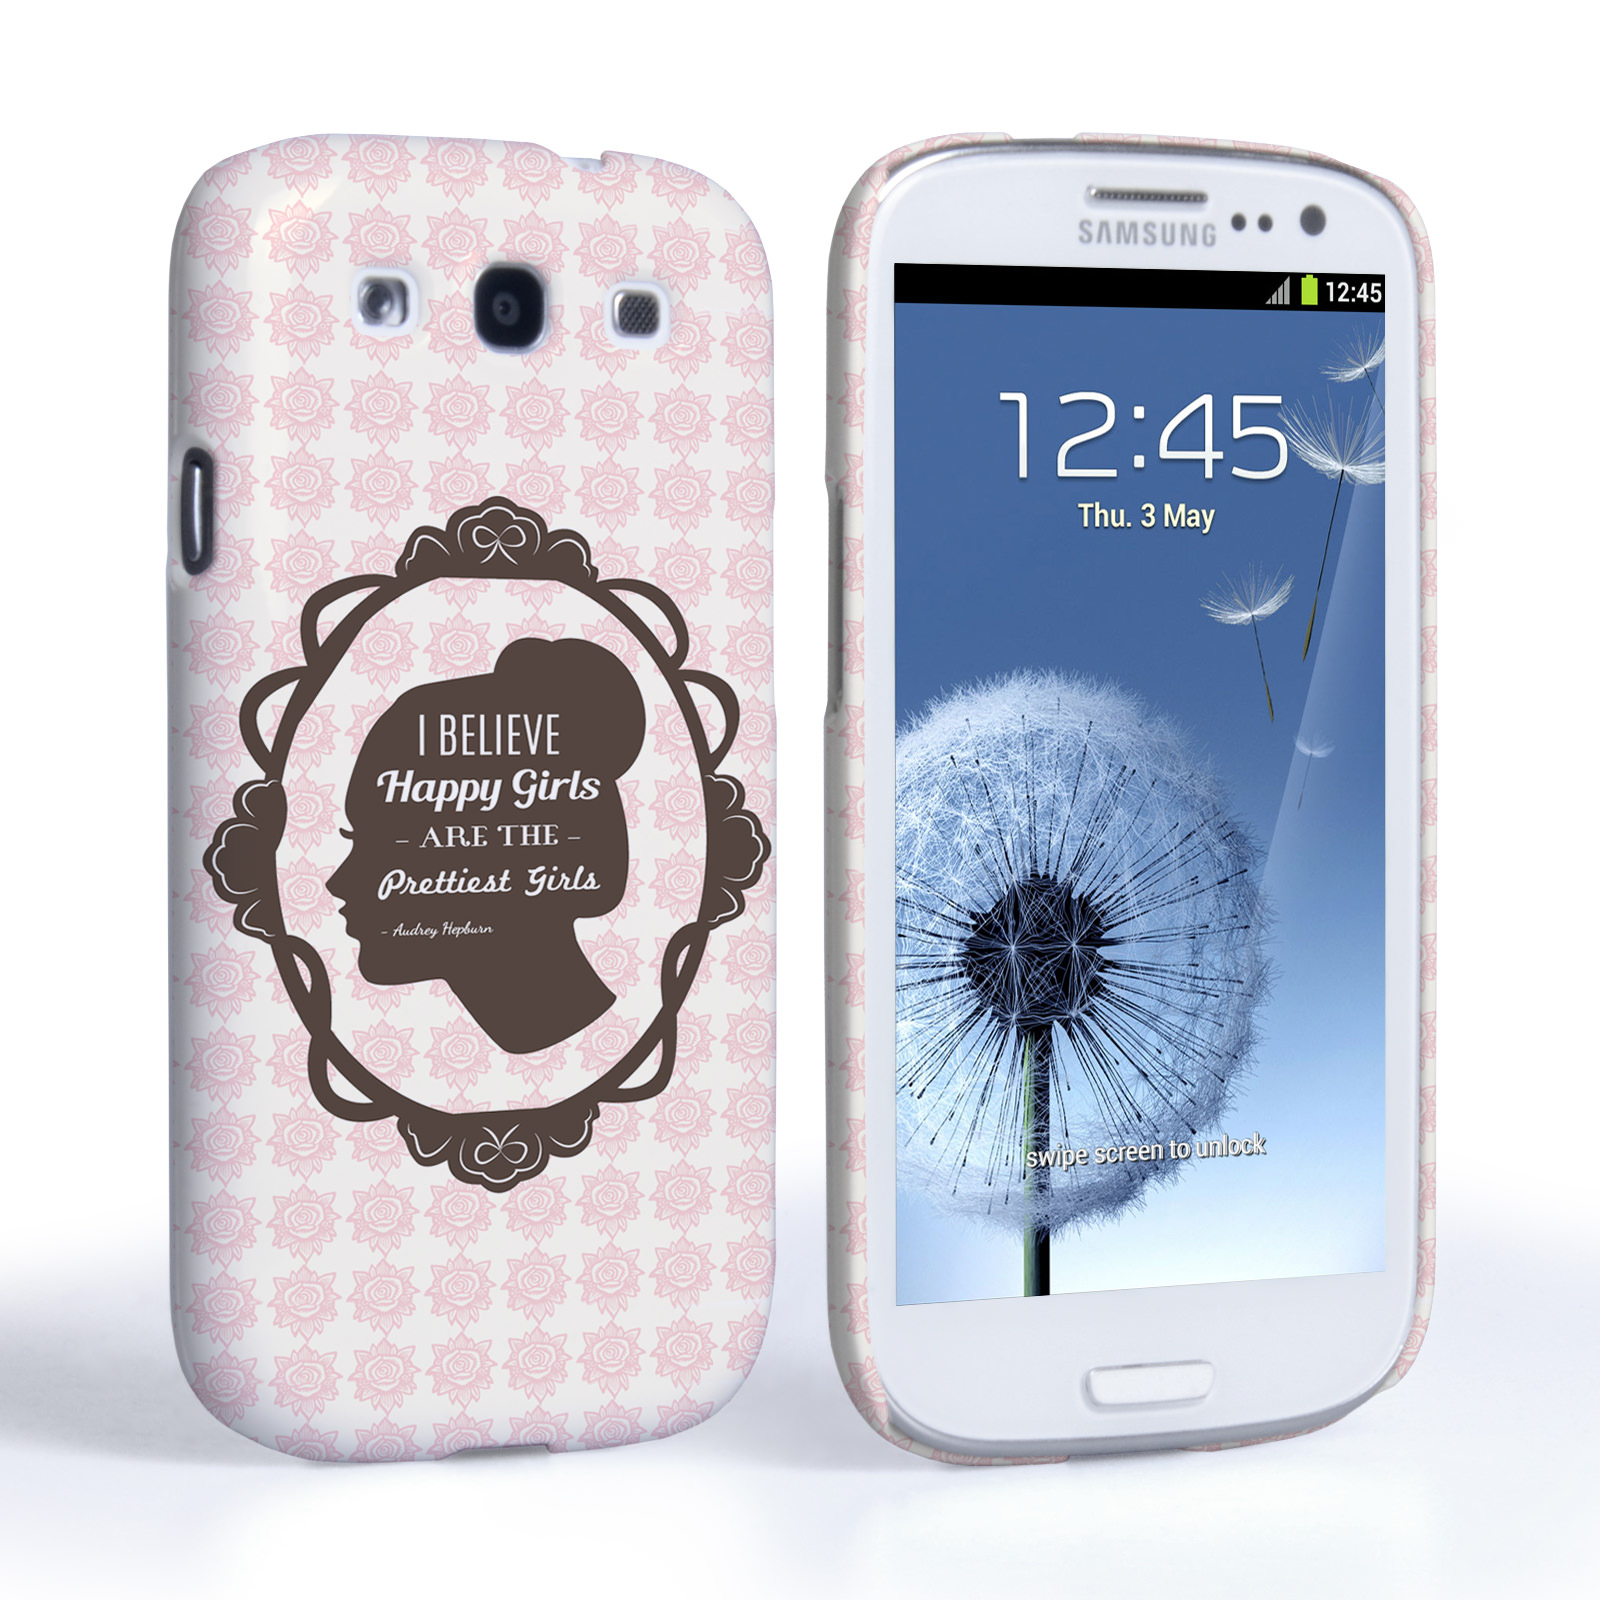 Caseflex Samsung Galaxy S3 Audrey Hepburn ‘Happy Girls’ Quote Case